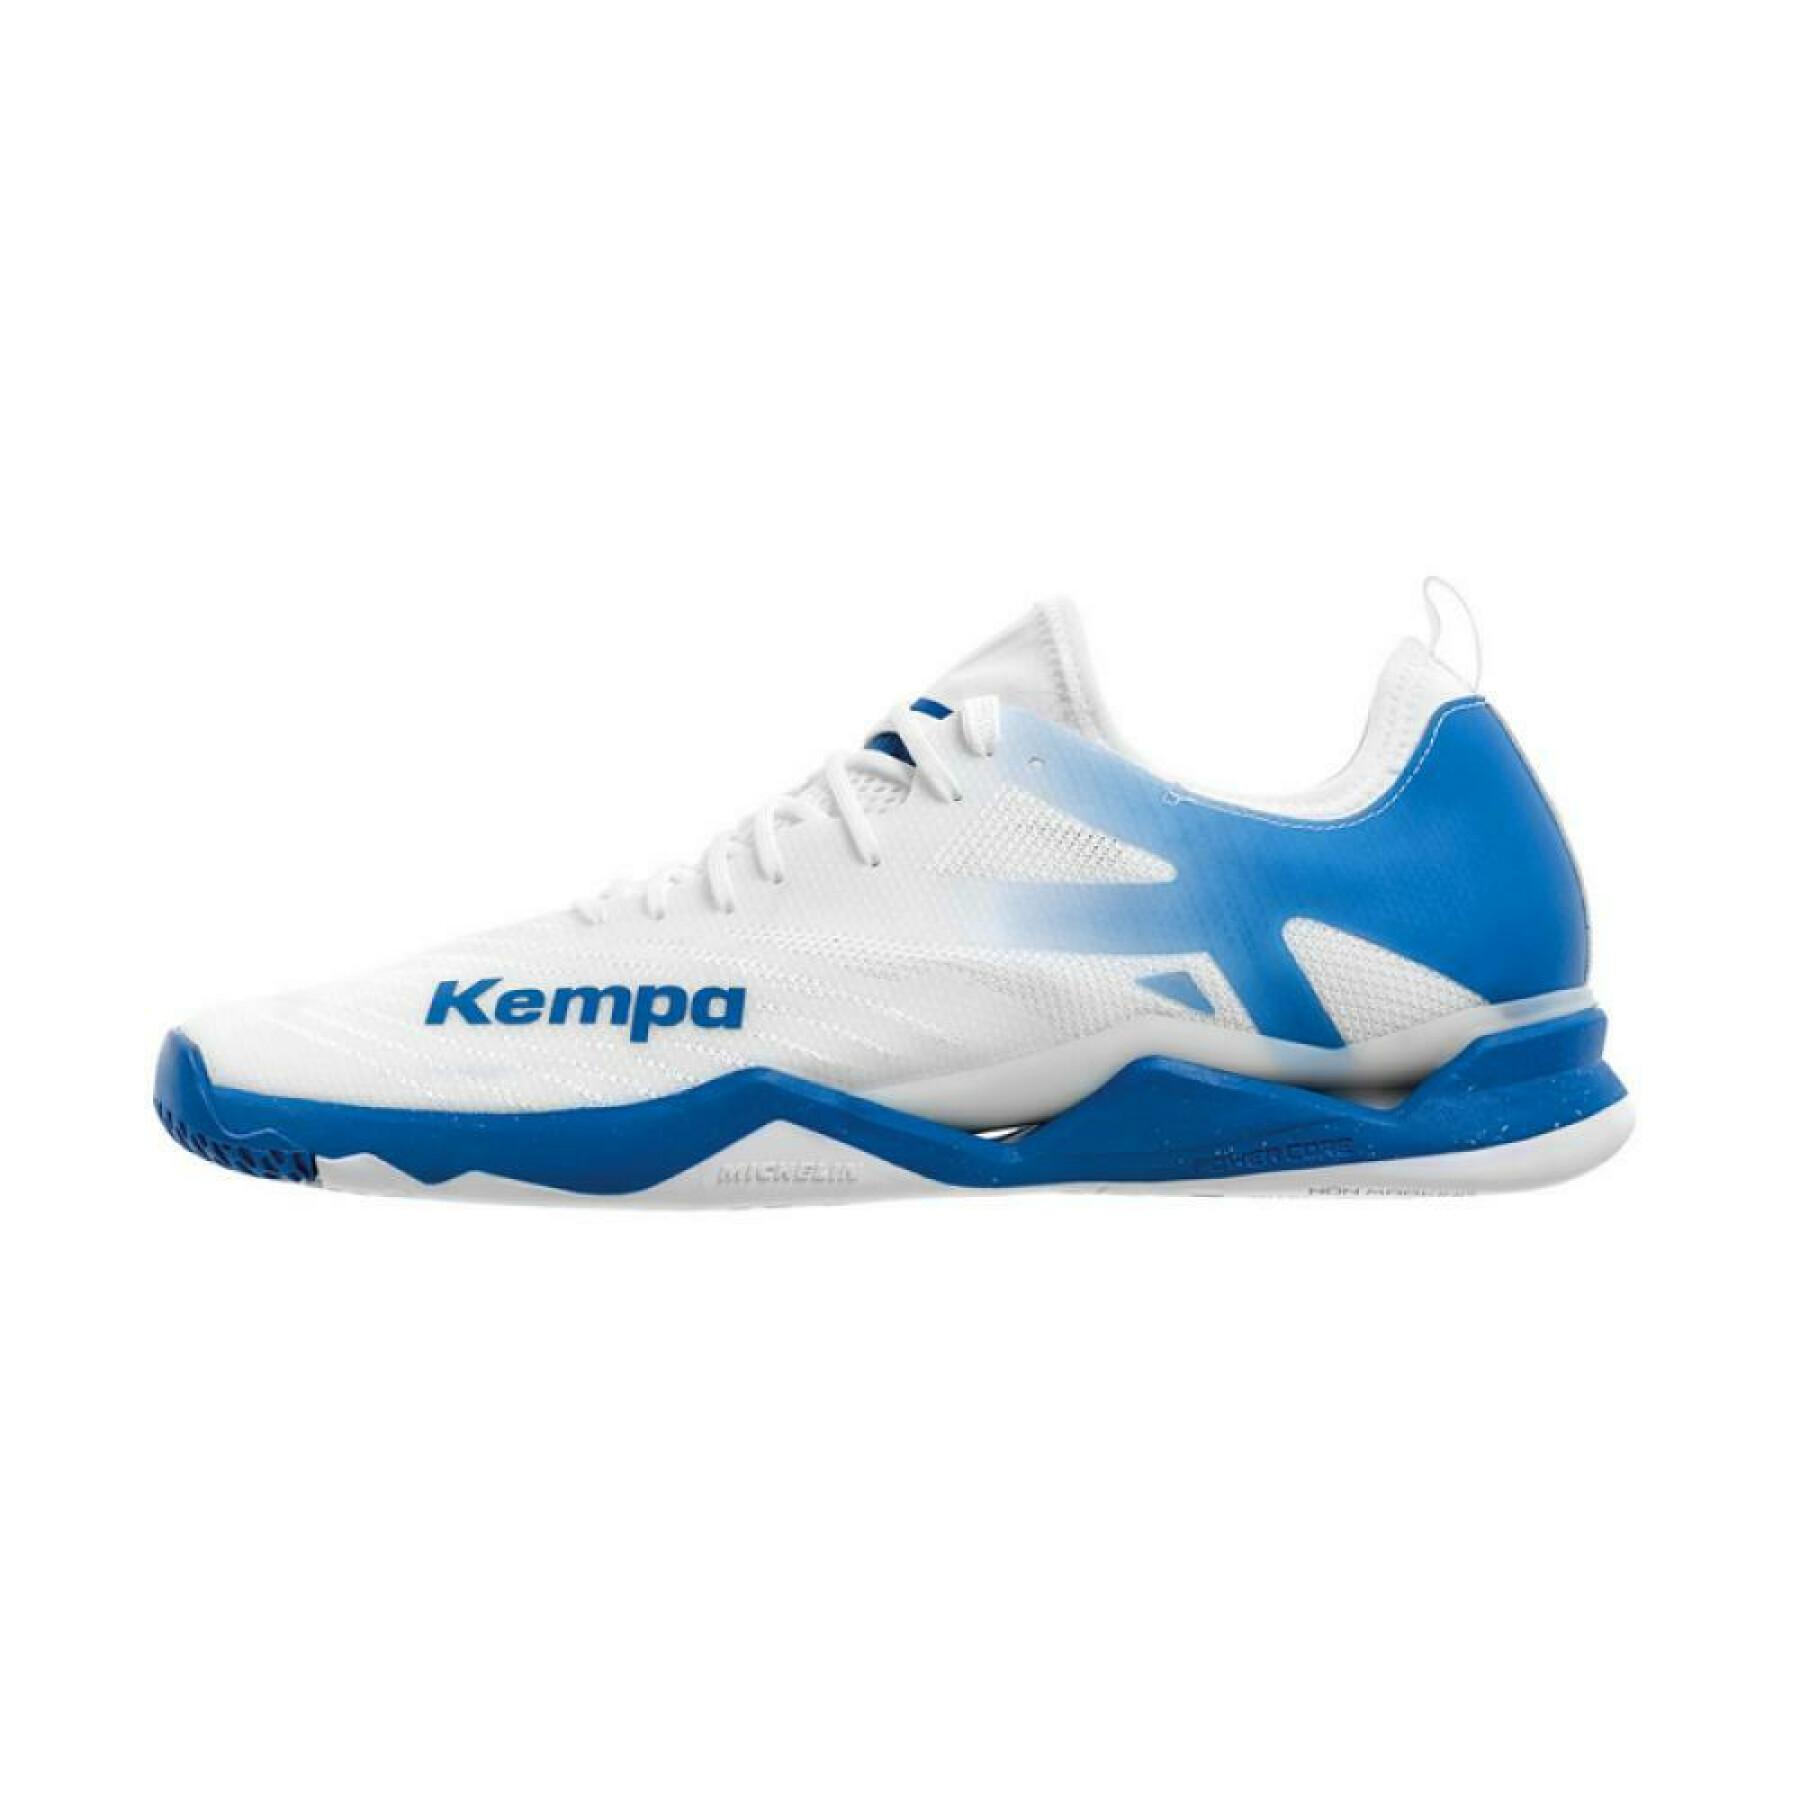 Binnen schoenen Kempa Wing Lite 2.0